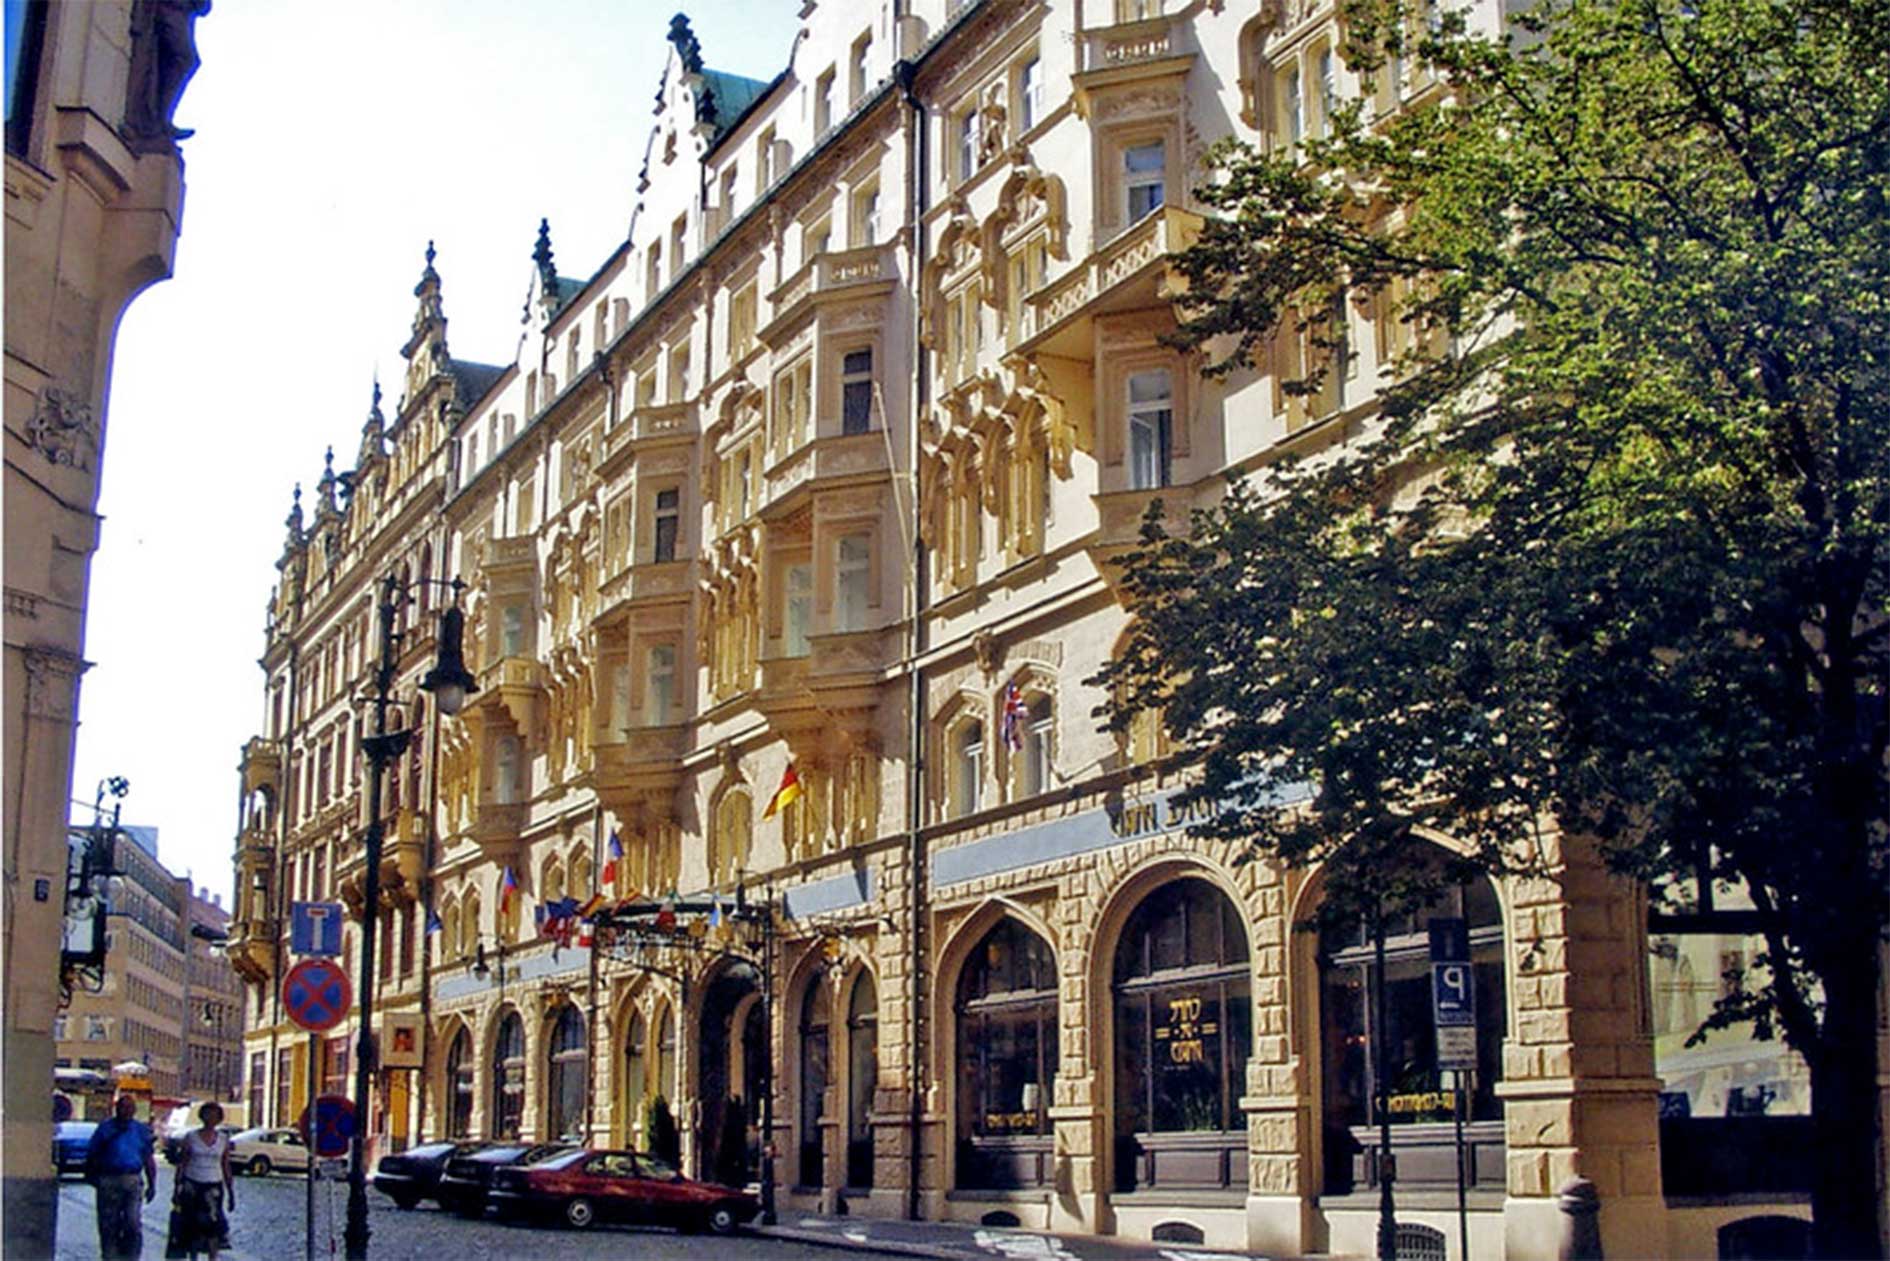 Hotel in old building in Prague